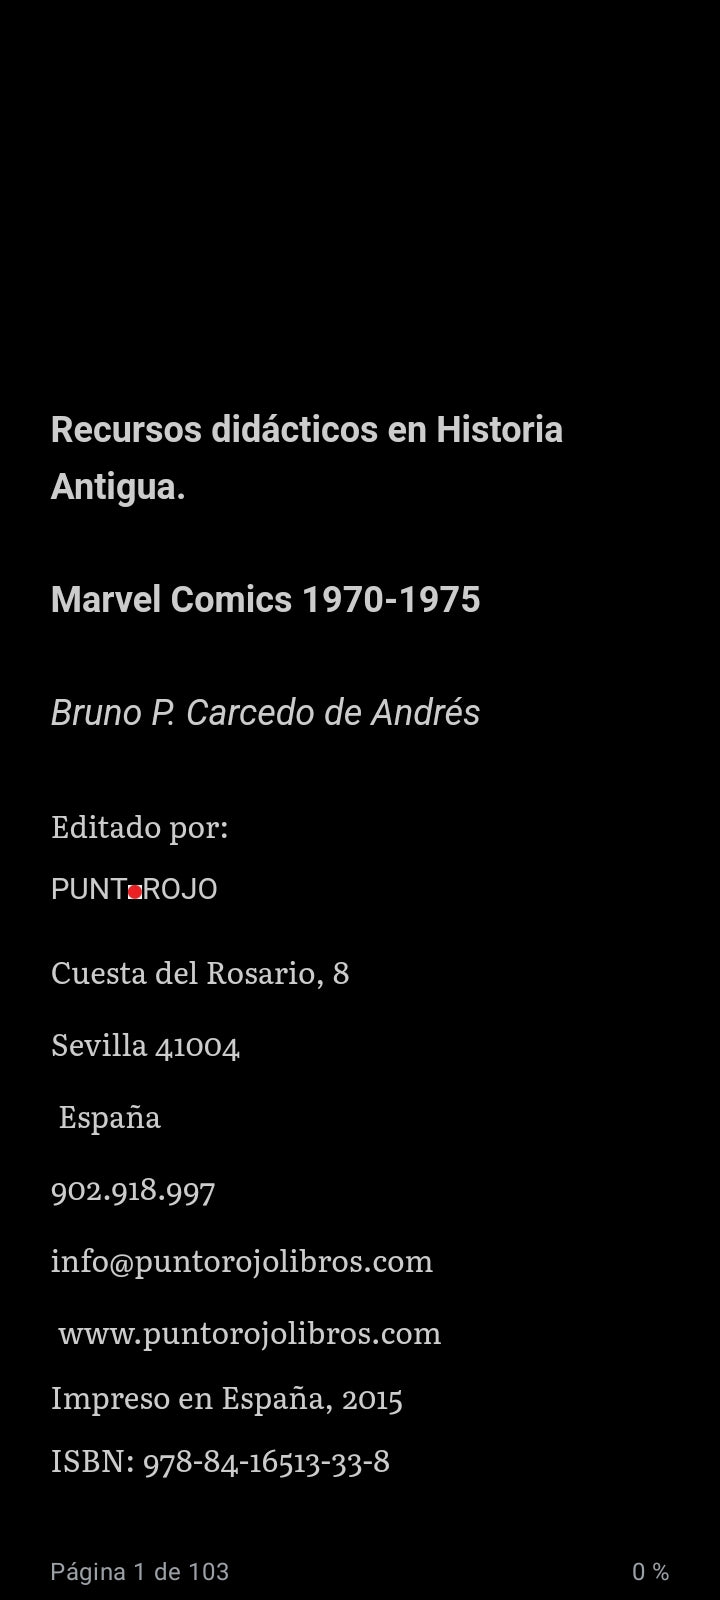 Recursos didácticos en Historia Antigua: Marvel Comics 1970-1975